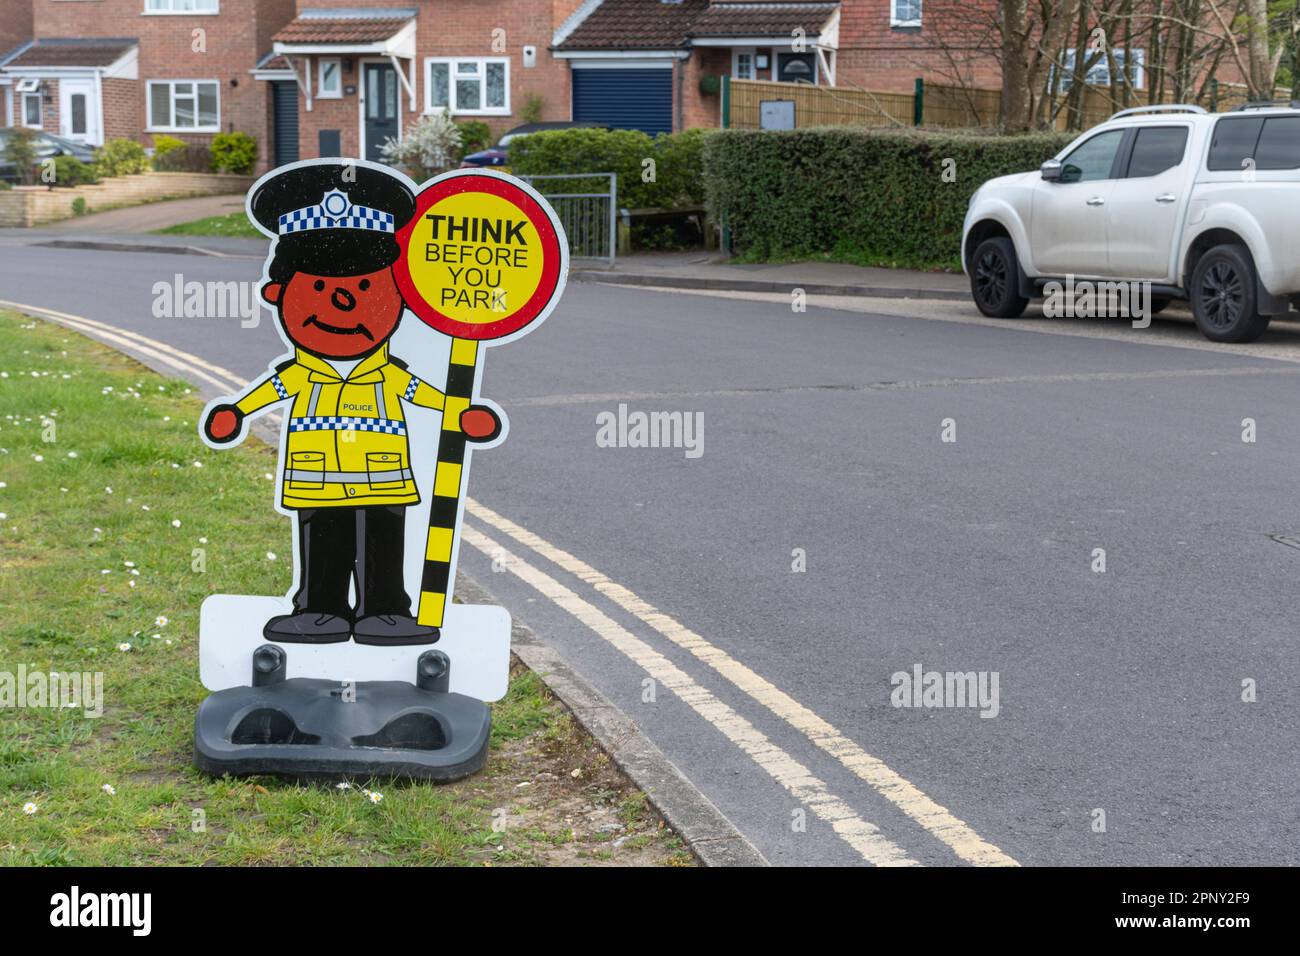 Divertente segno fuori di una scuola con un poliziotto e lollipop segno lettura pensare prima di parcheggiare, Inghilterra, Regno Unito. Sicurezza stradale presso il punto di rientro a scuola Foto Stock